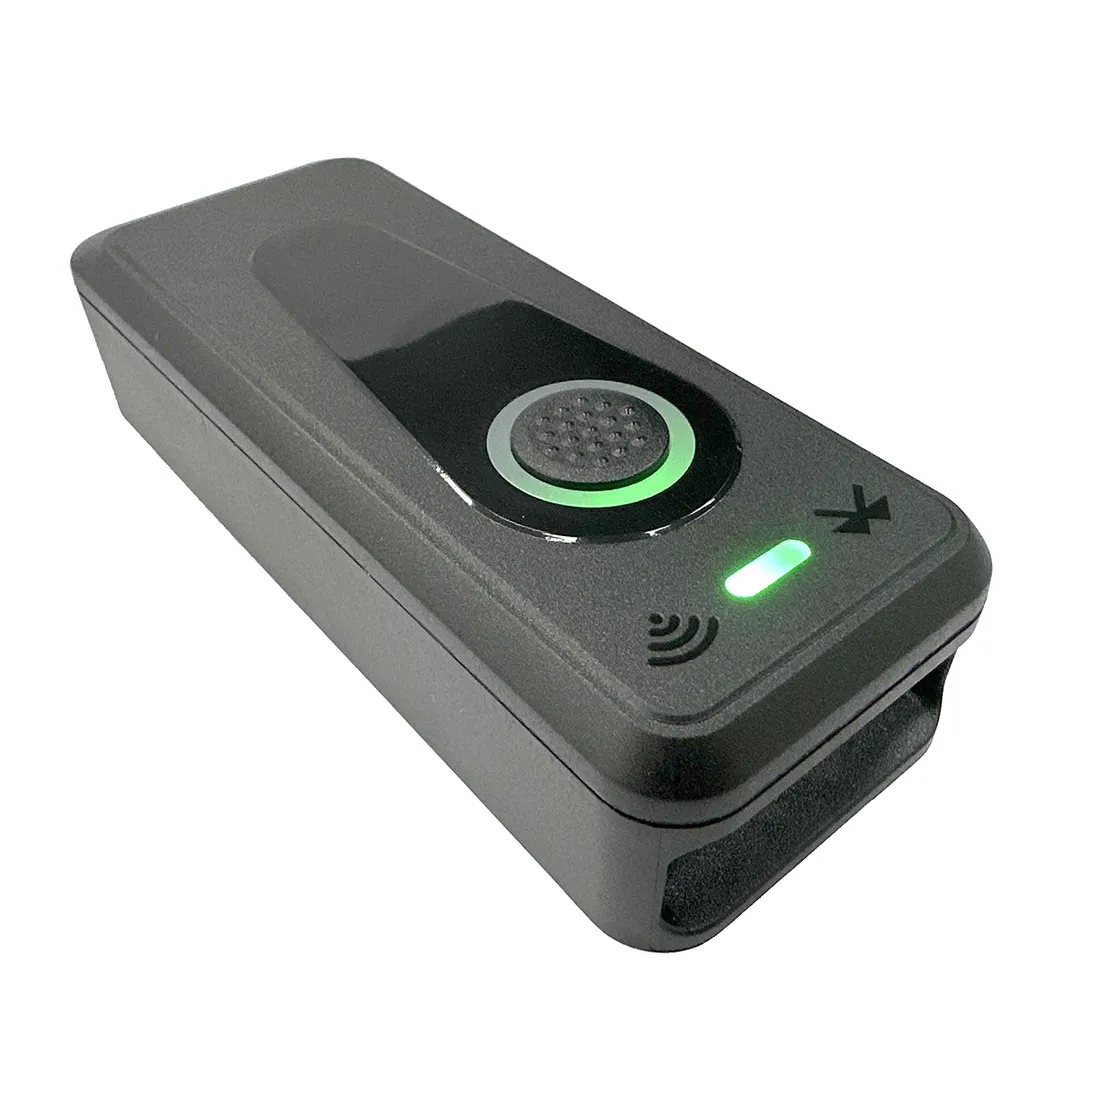 Portable BT 2.4g Wireless Barcode Scanner USB Wired Connection 1D 2D Wireless Barcode Reader 1D/2D/QR Bar Code Scanner